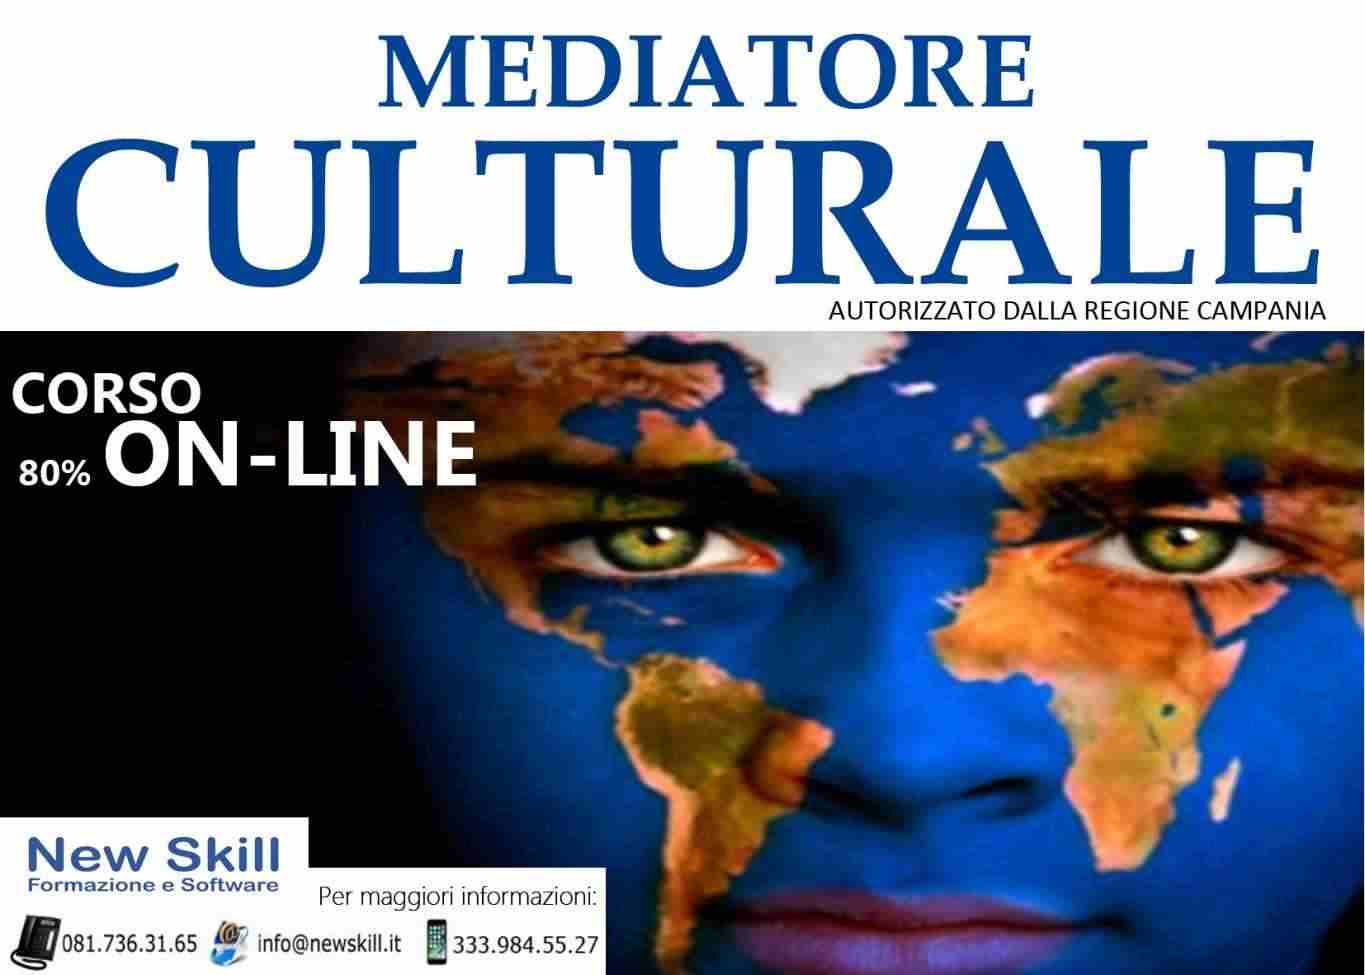 Corso di Mediatore Culturale alla New Skill